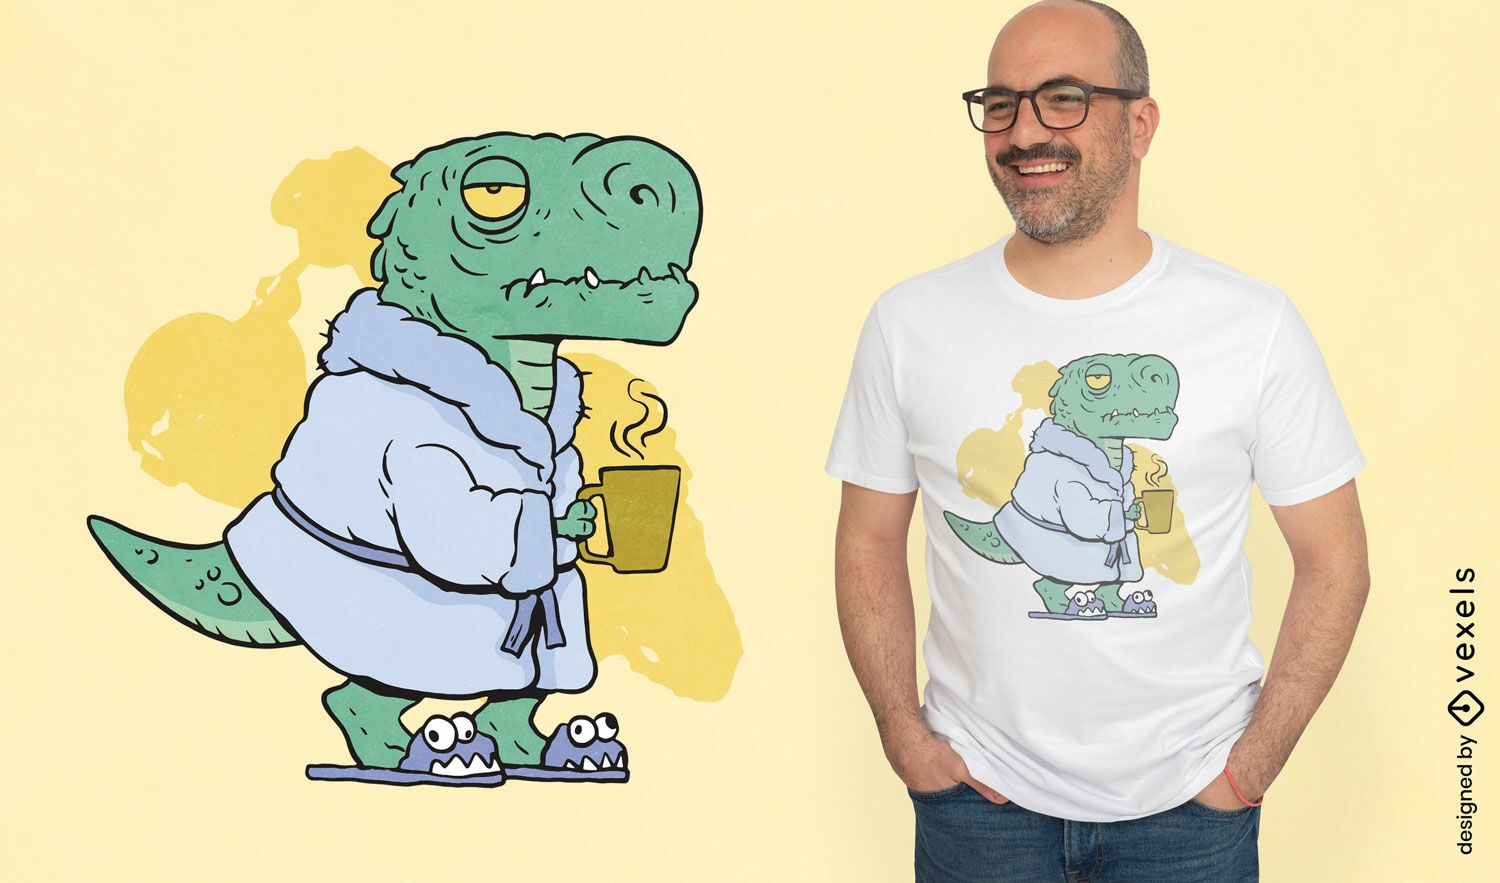  Chilled T-Rex t-shirt design